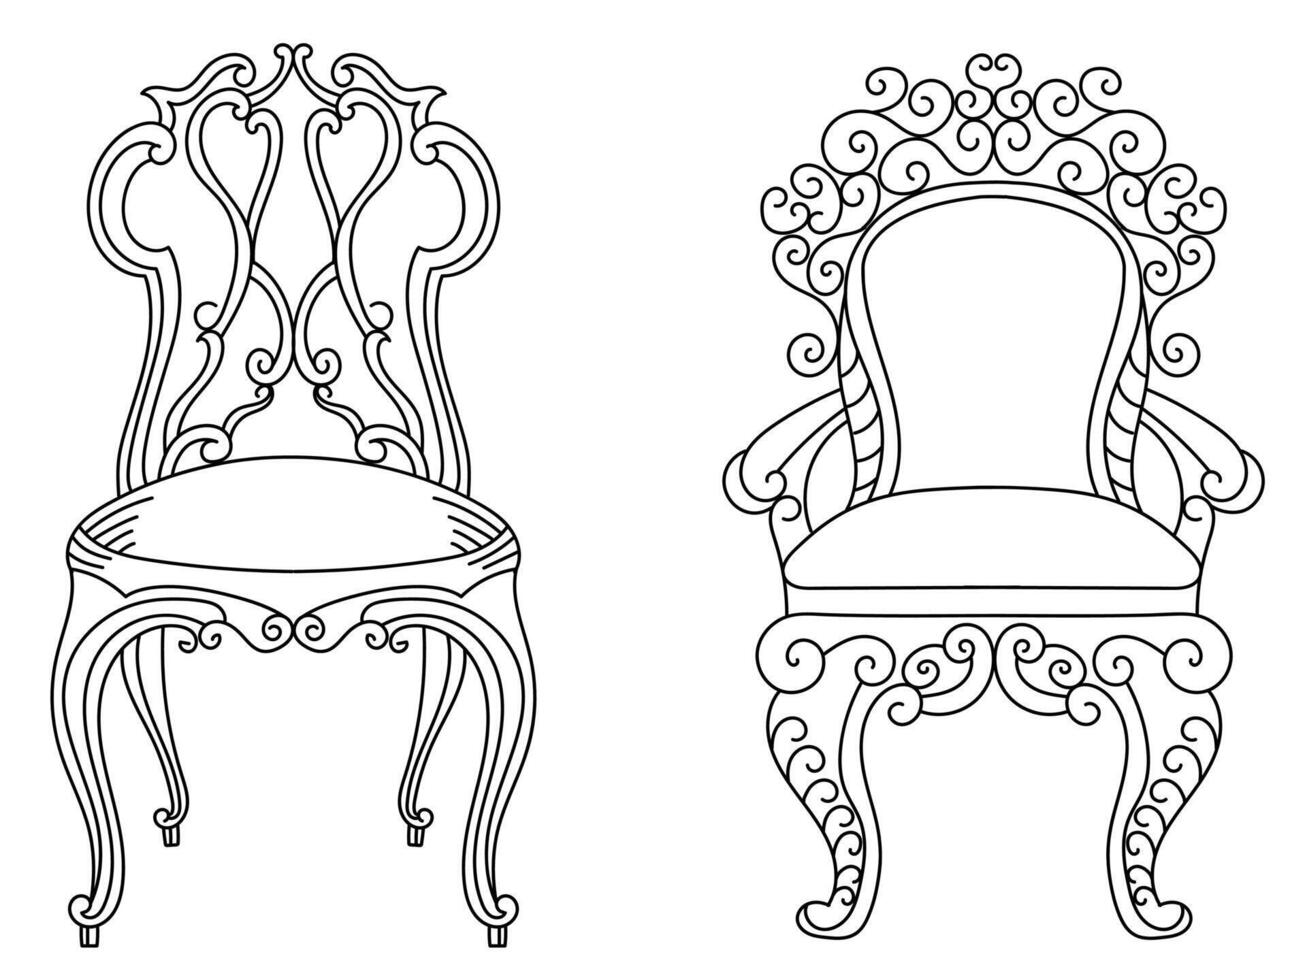 moderno mueble Sillón hogar, continuo línea dibujo ejecutivo oficina silla concepto, sofá silla vector ilustración